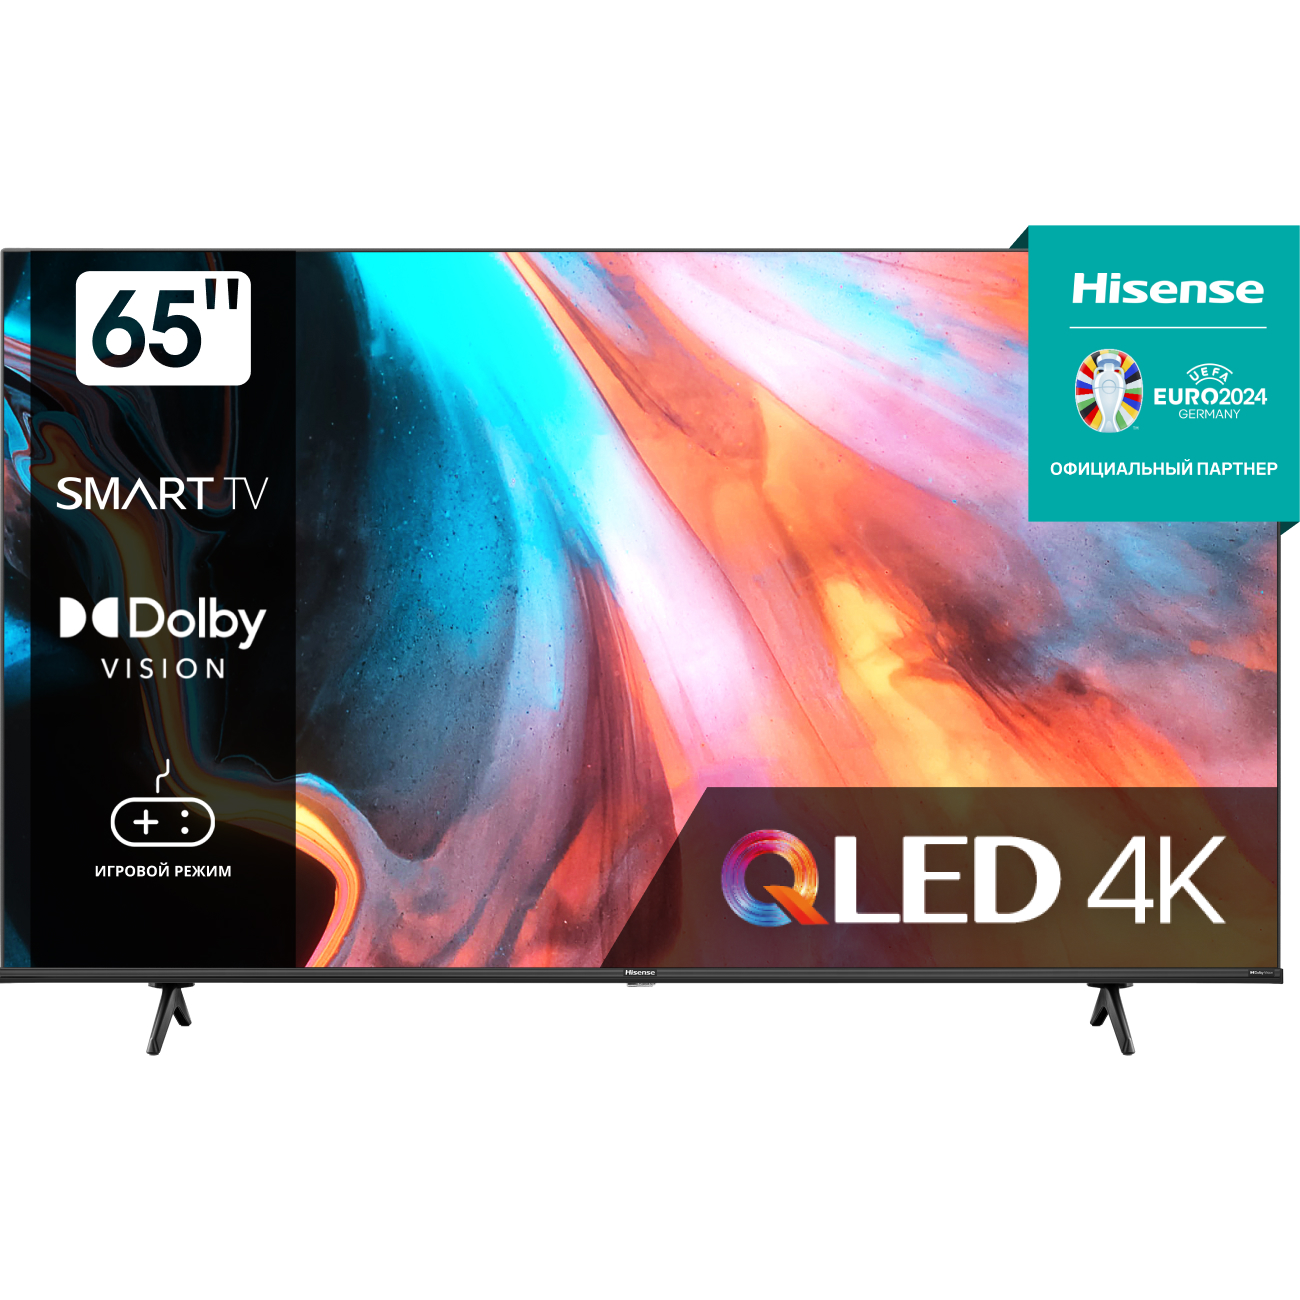 4K (Ultra HD) Smart телевизор Hisense 65e7hq (Имп), цвет черный 543212 65e7hq (Имп) - фото 1